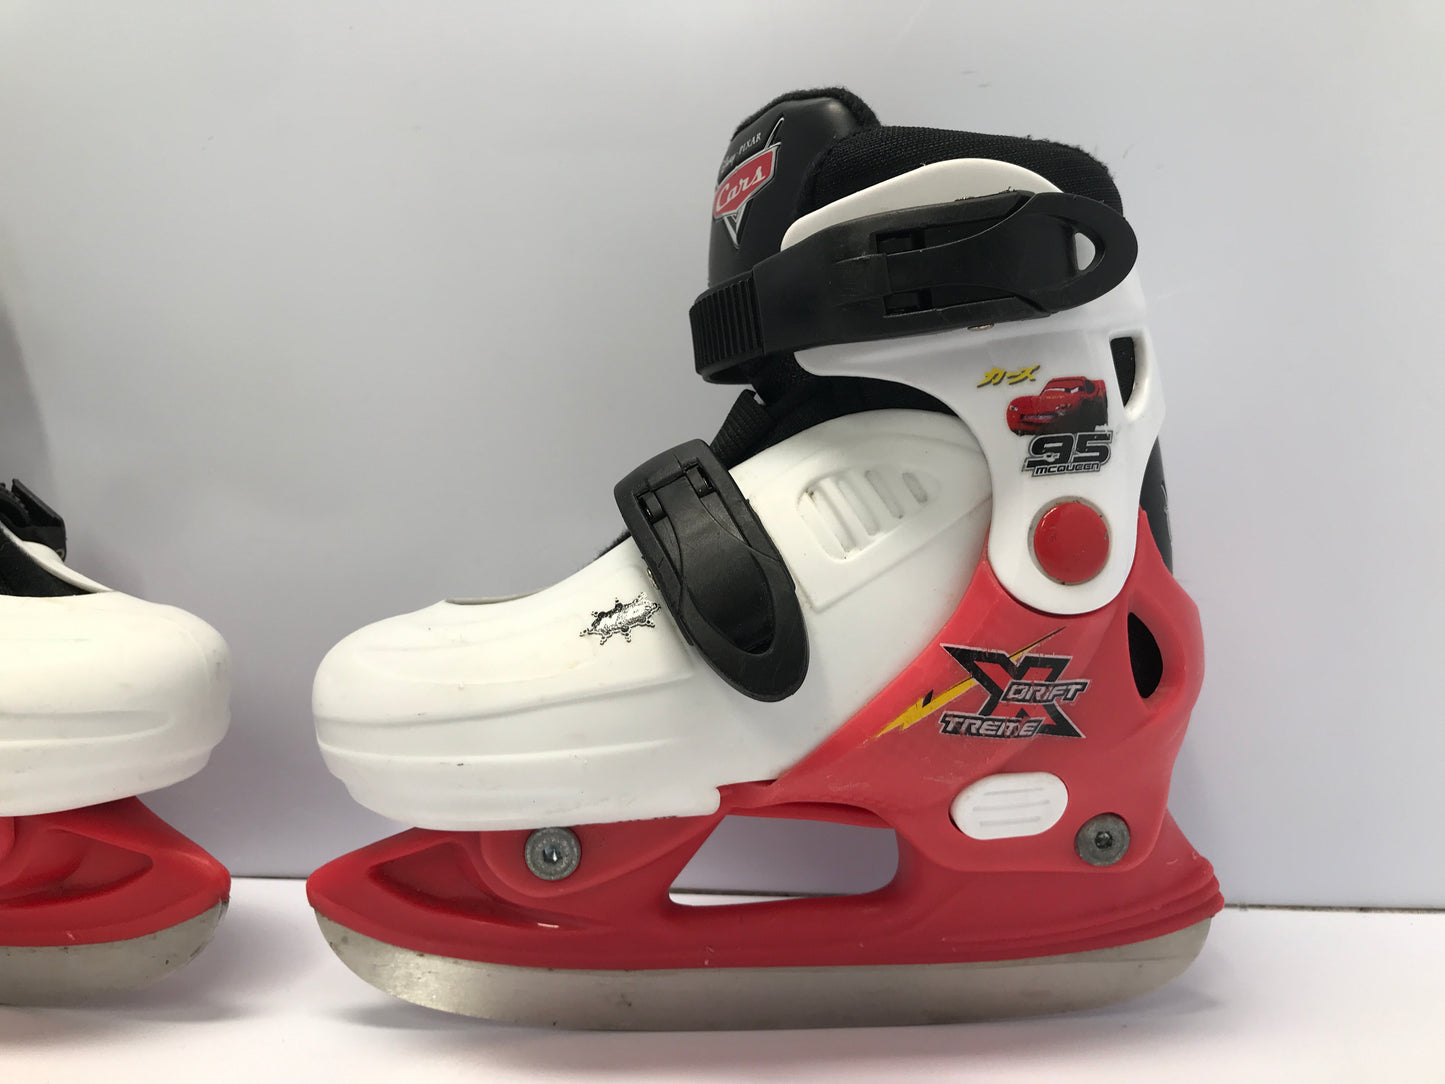 Ice Skates Child Size 9-12 Shoe Size Toddler Adjustable Disney Cars Excellent